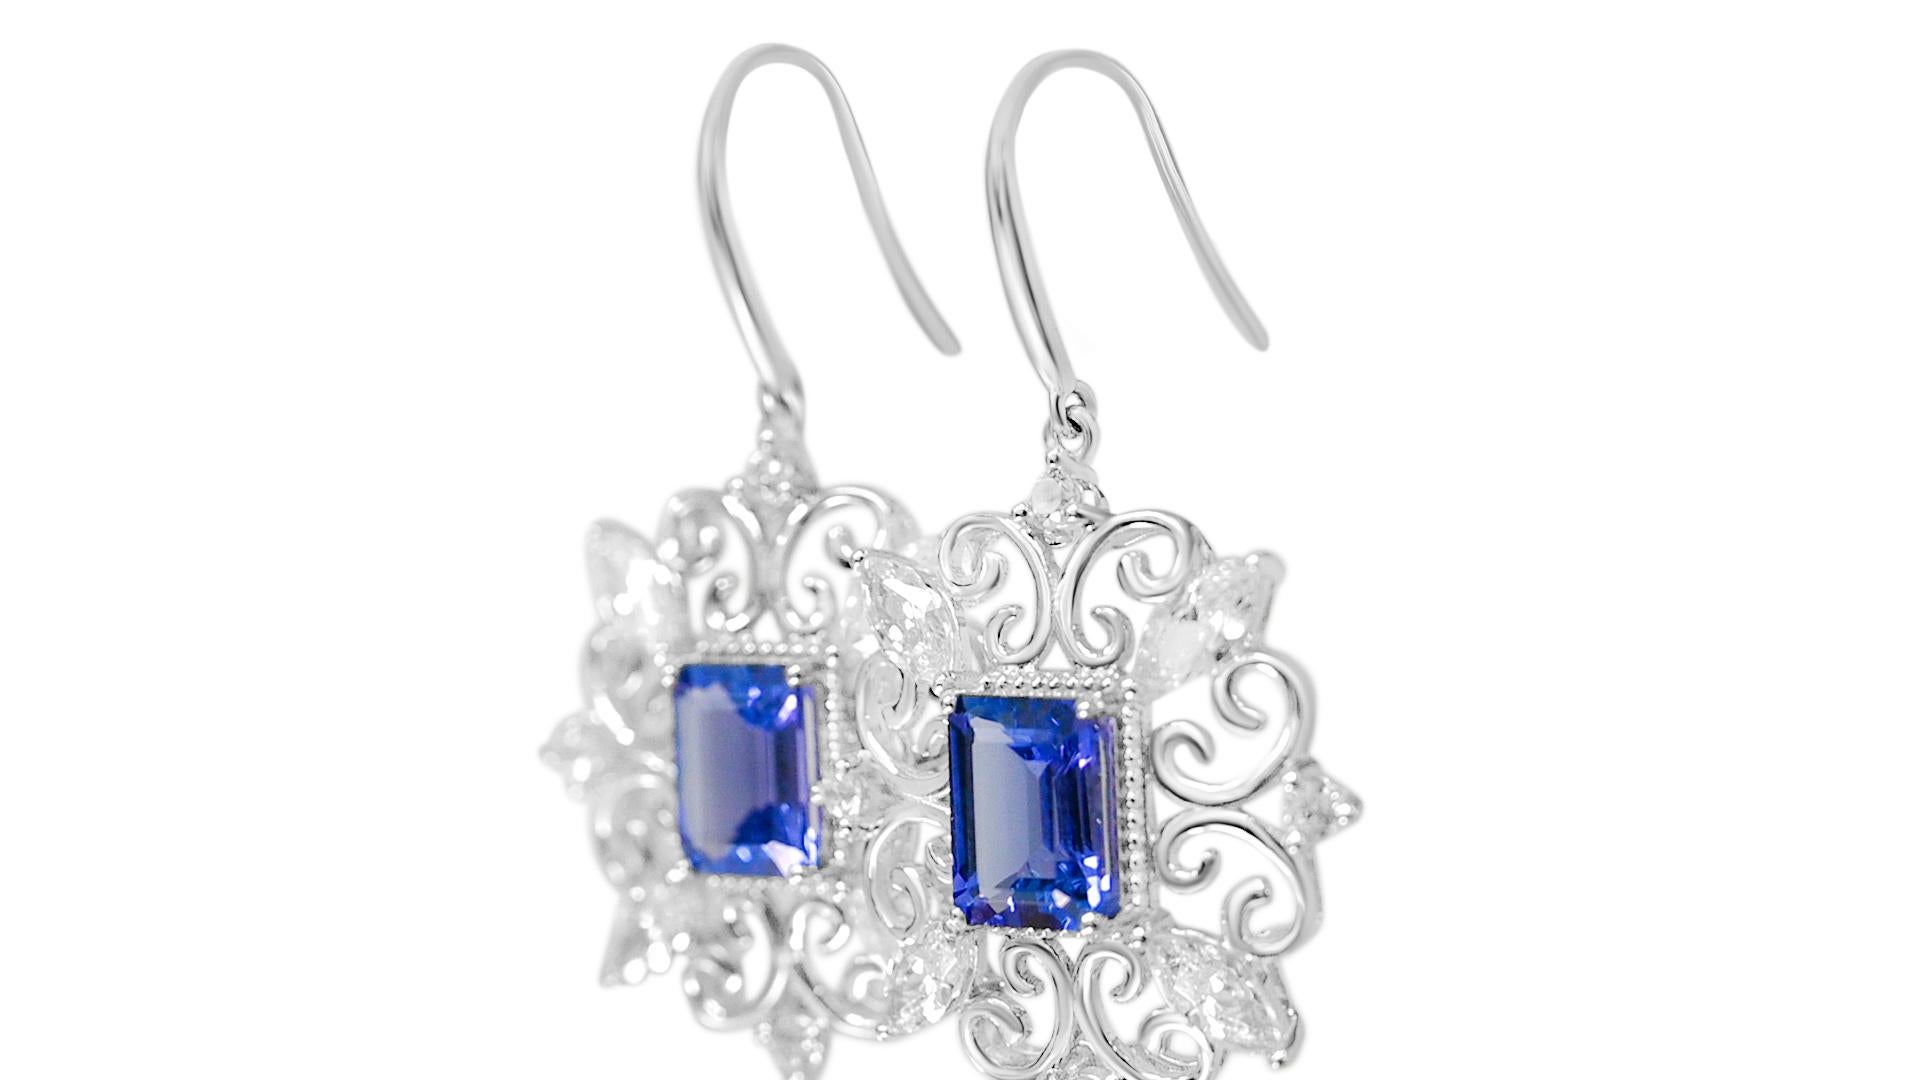 Willkommen bei Blue Star Gems NY LLC! Entdecken Sie beliebte Ohrringe zur Verlobung und Hochzeit - von klassisch bis vintage inspiriert. Wir bieten Joyful-Schmuck für den Alltag. Nur für Sie. Wir gehen über die aktuellen Industriestandards hinaus